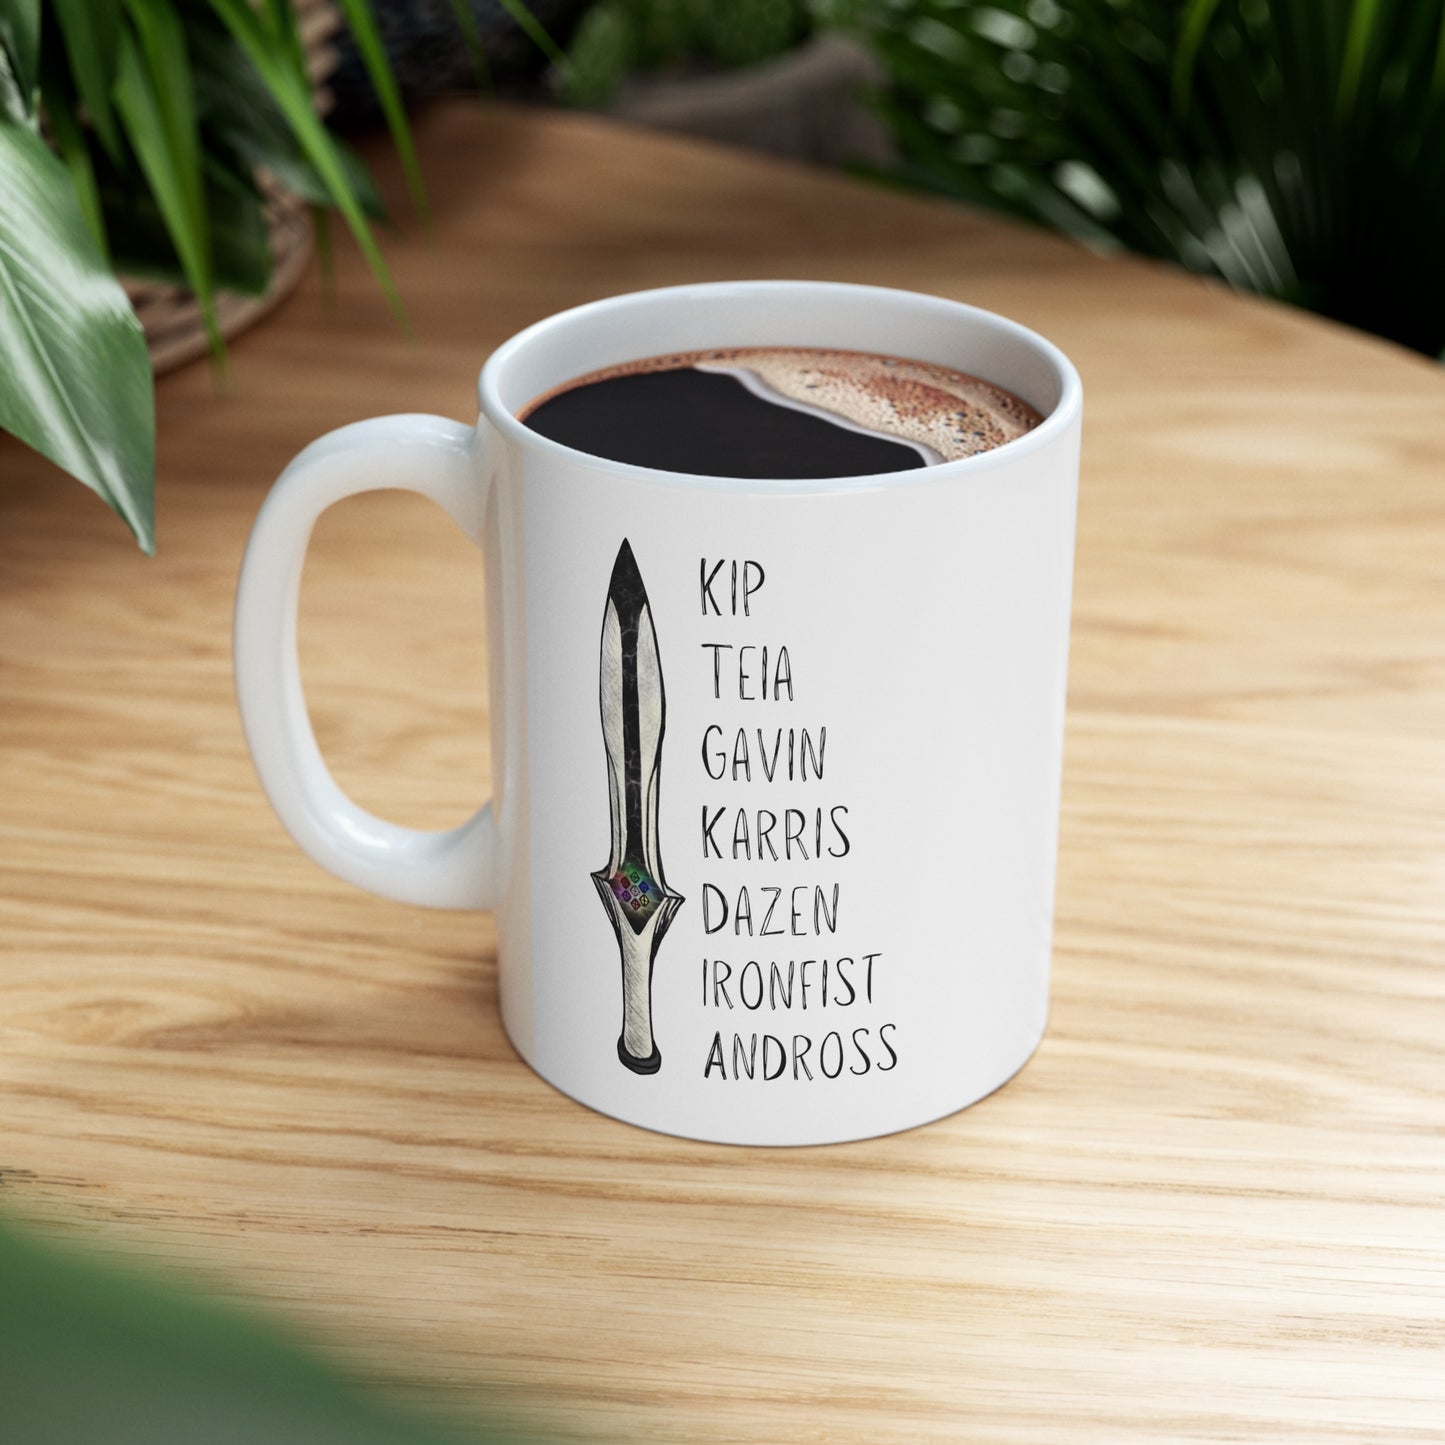 lightbringer coffee mug